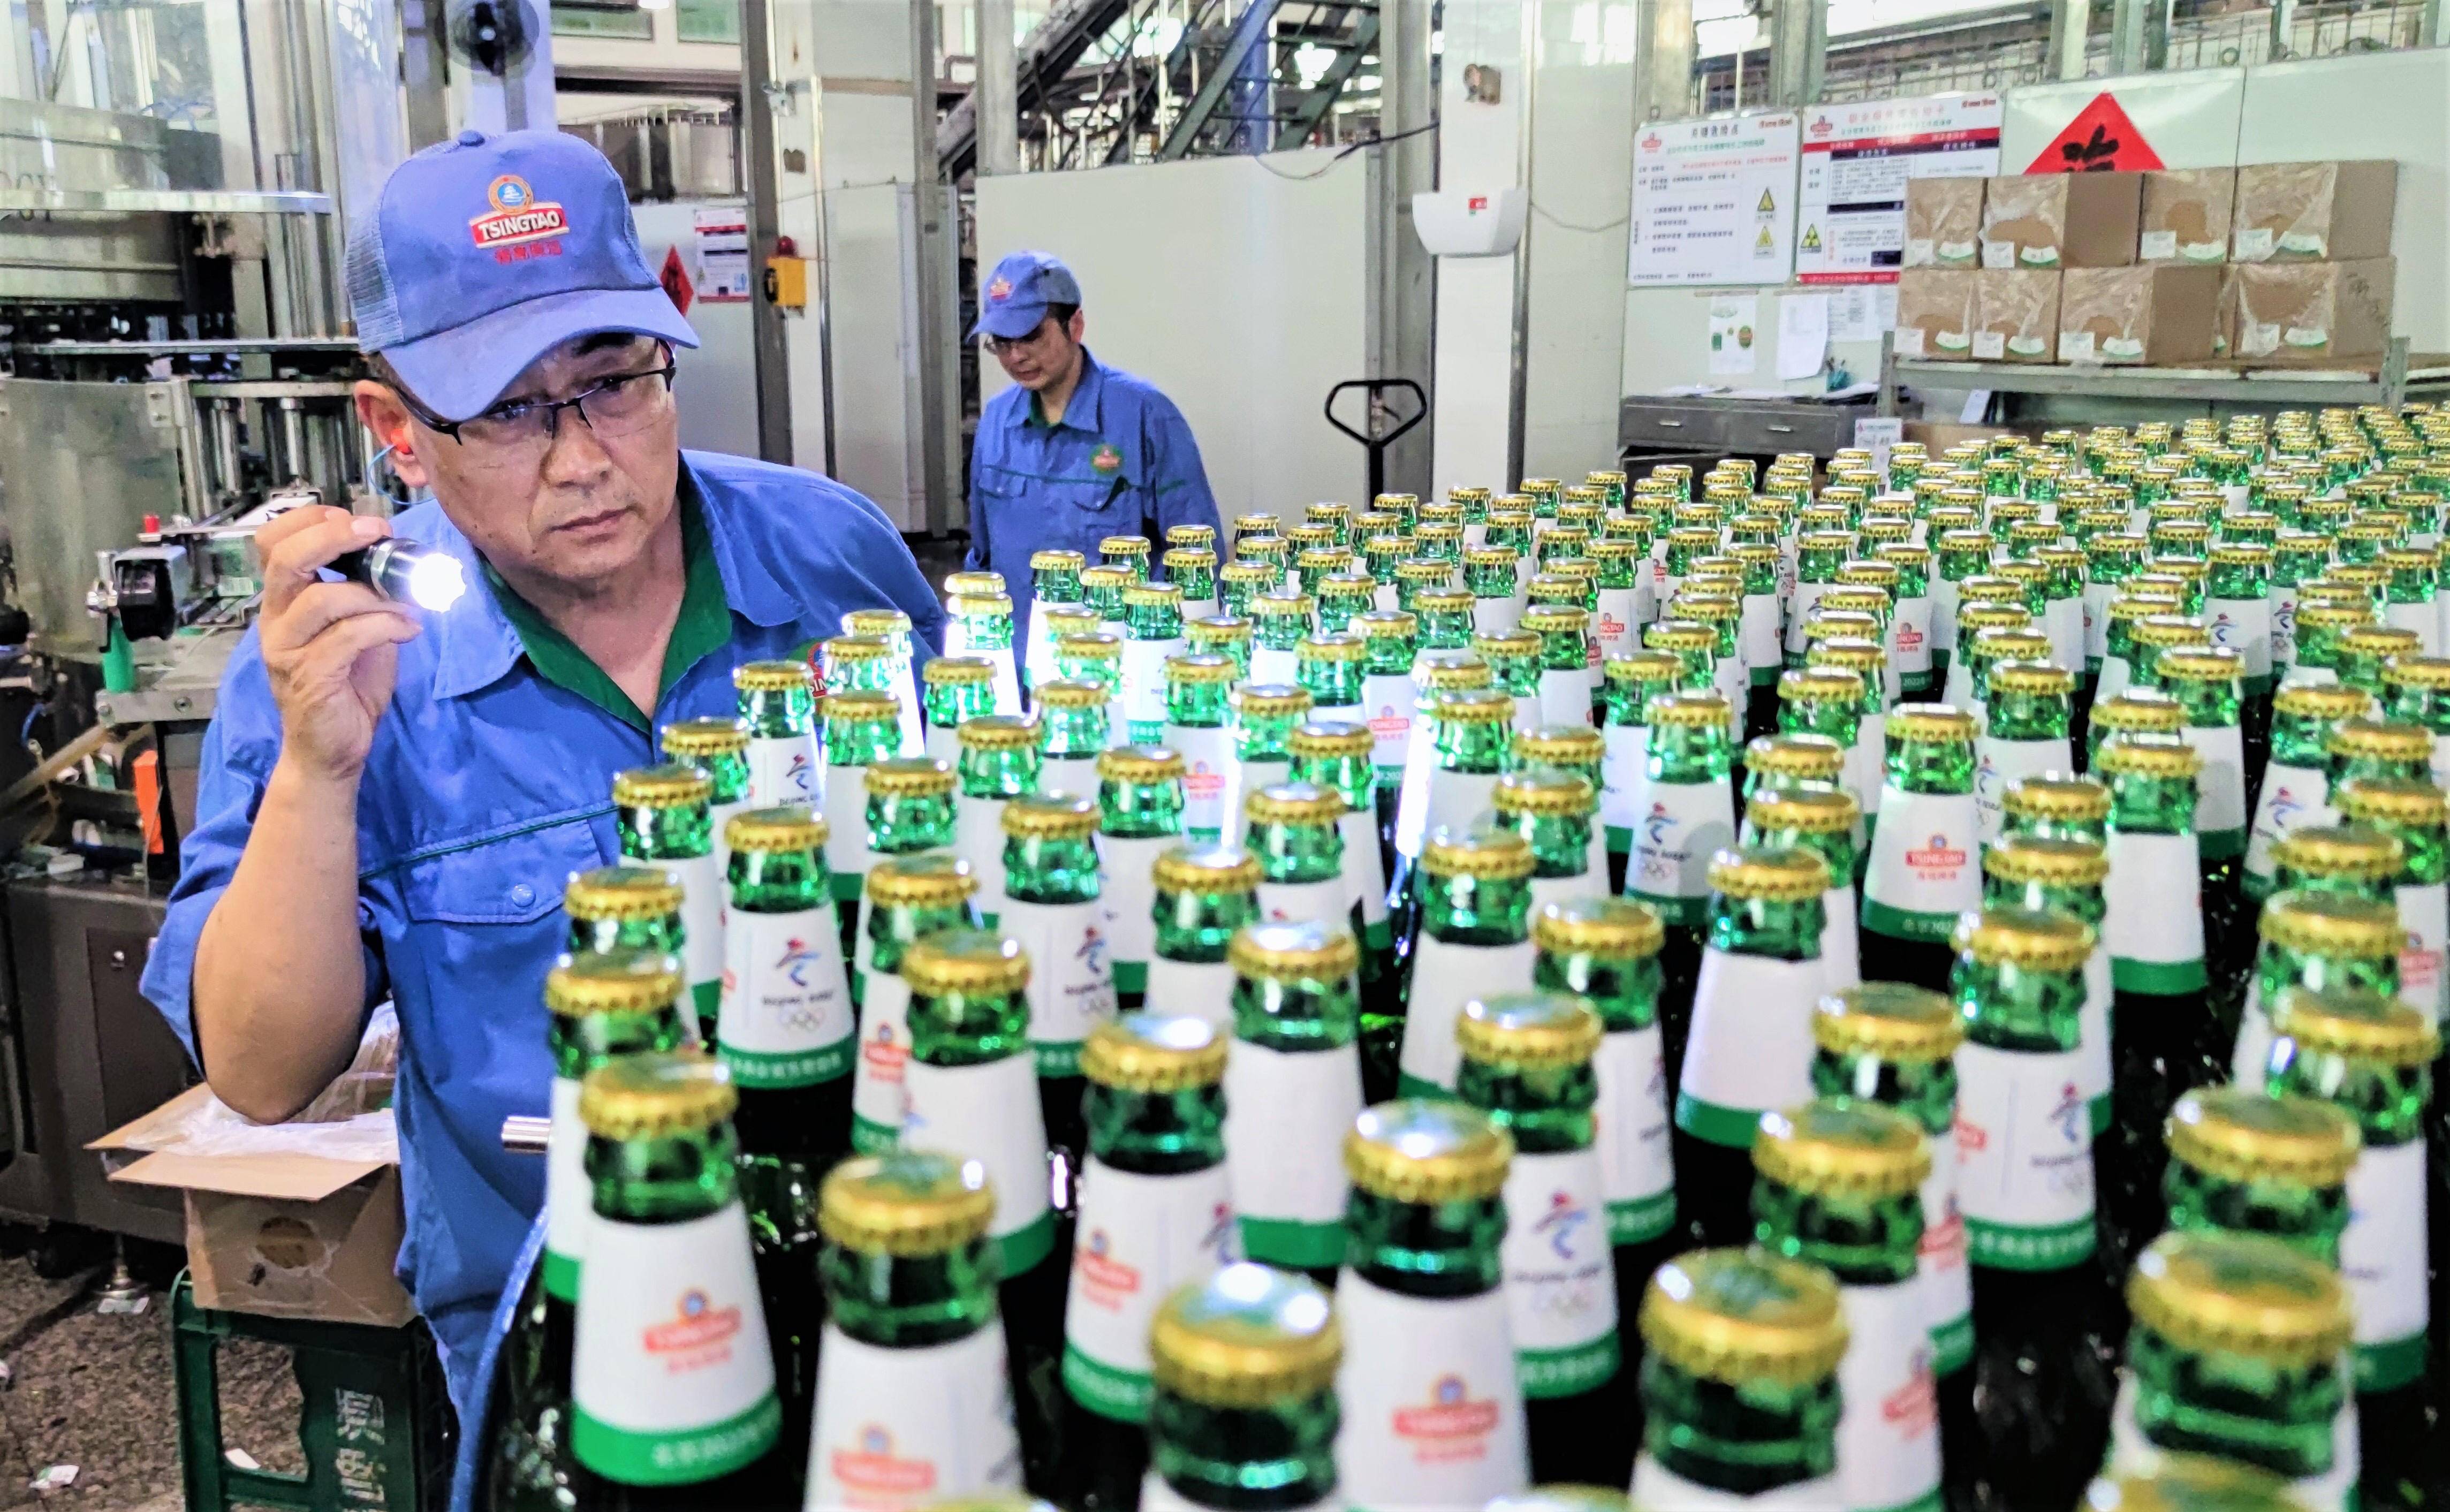 青岛啤酒多年来享誉全球靠的就是一代代青啤人对质量的坚守。傅学军